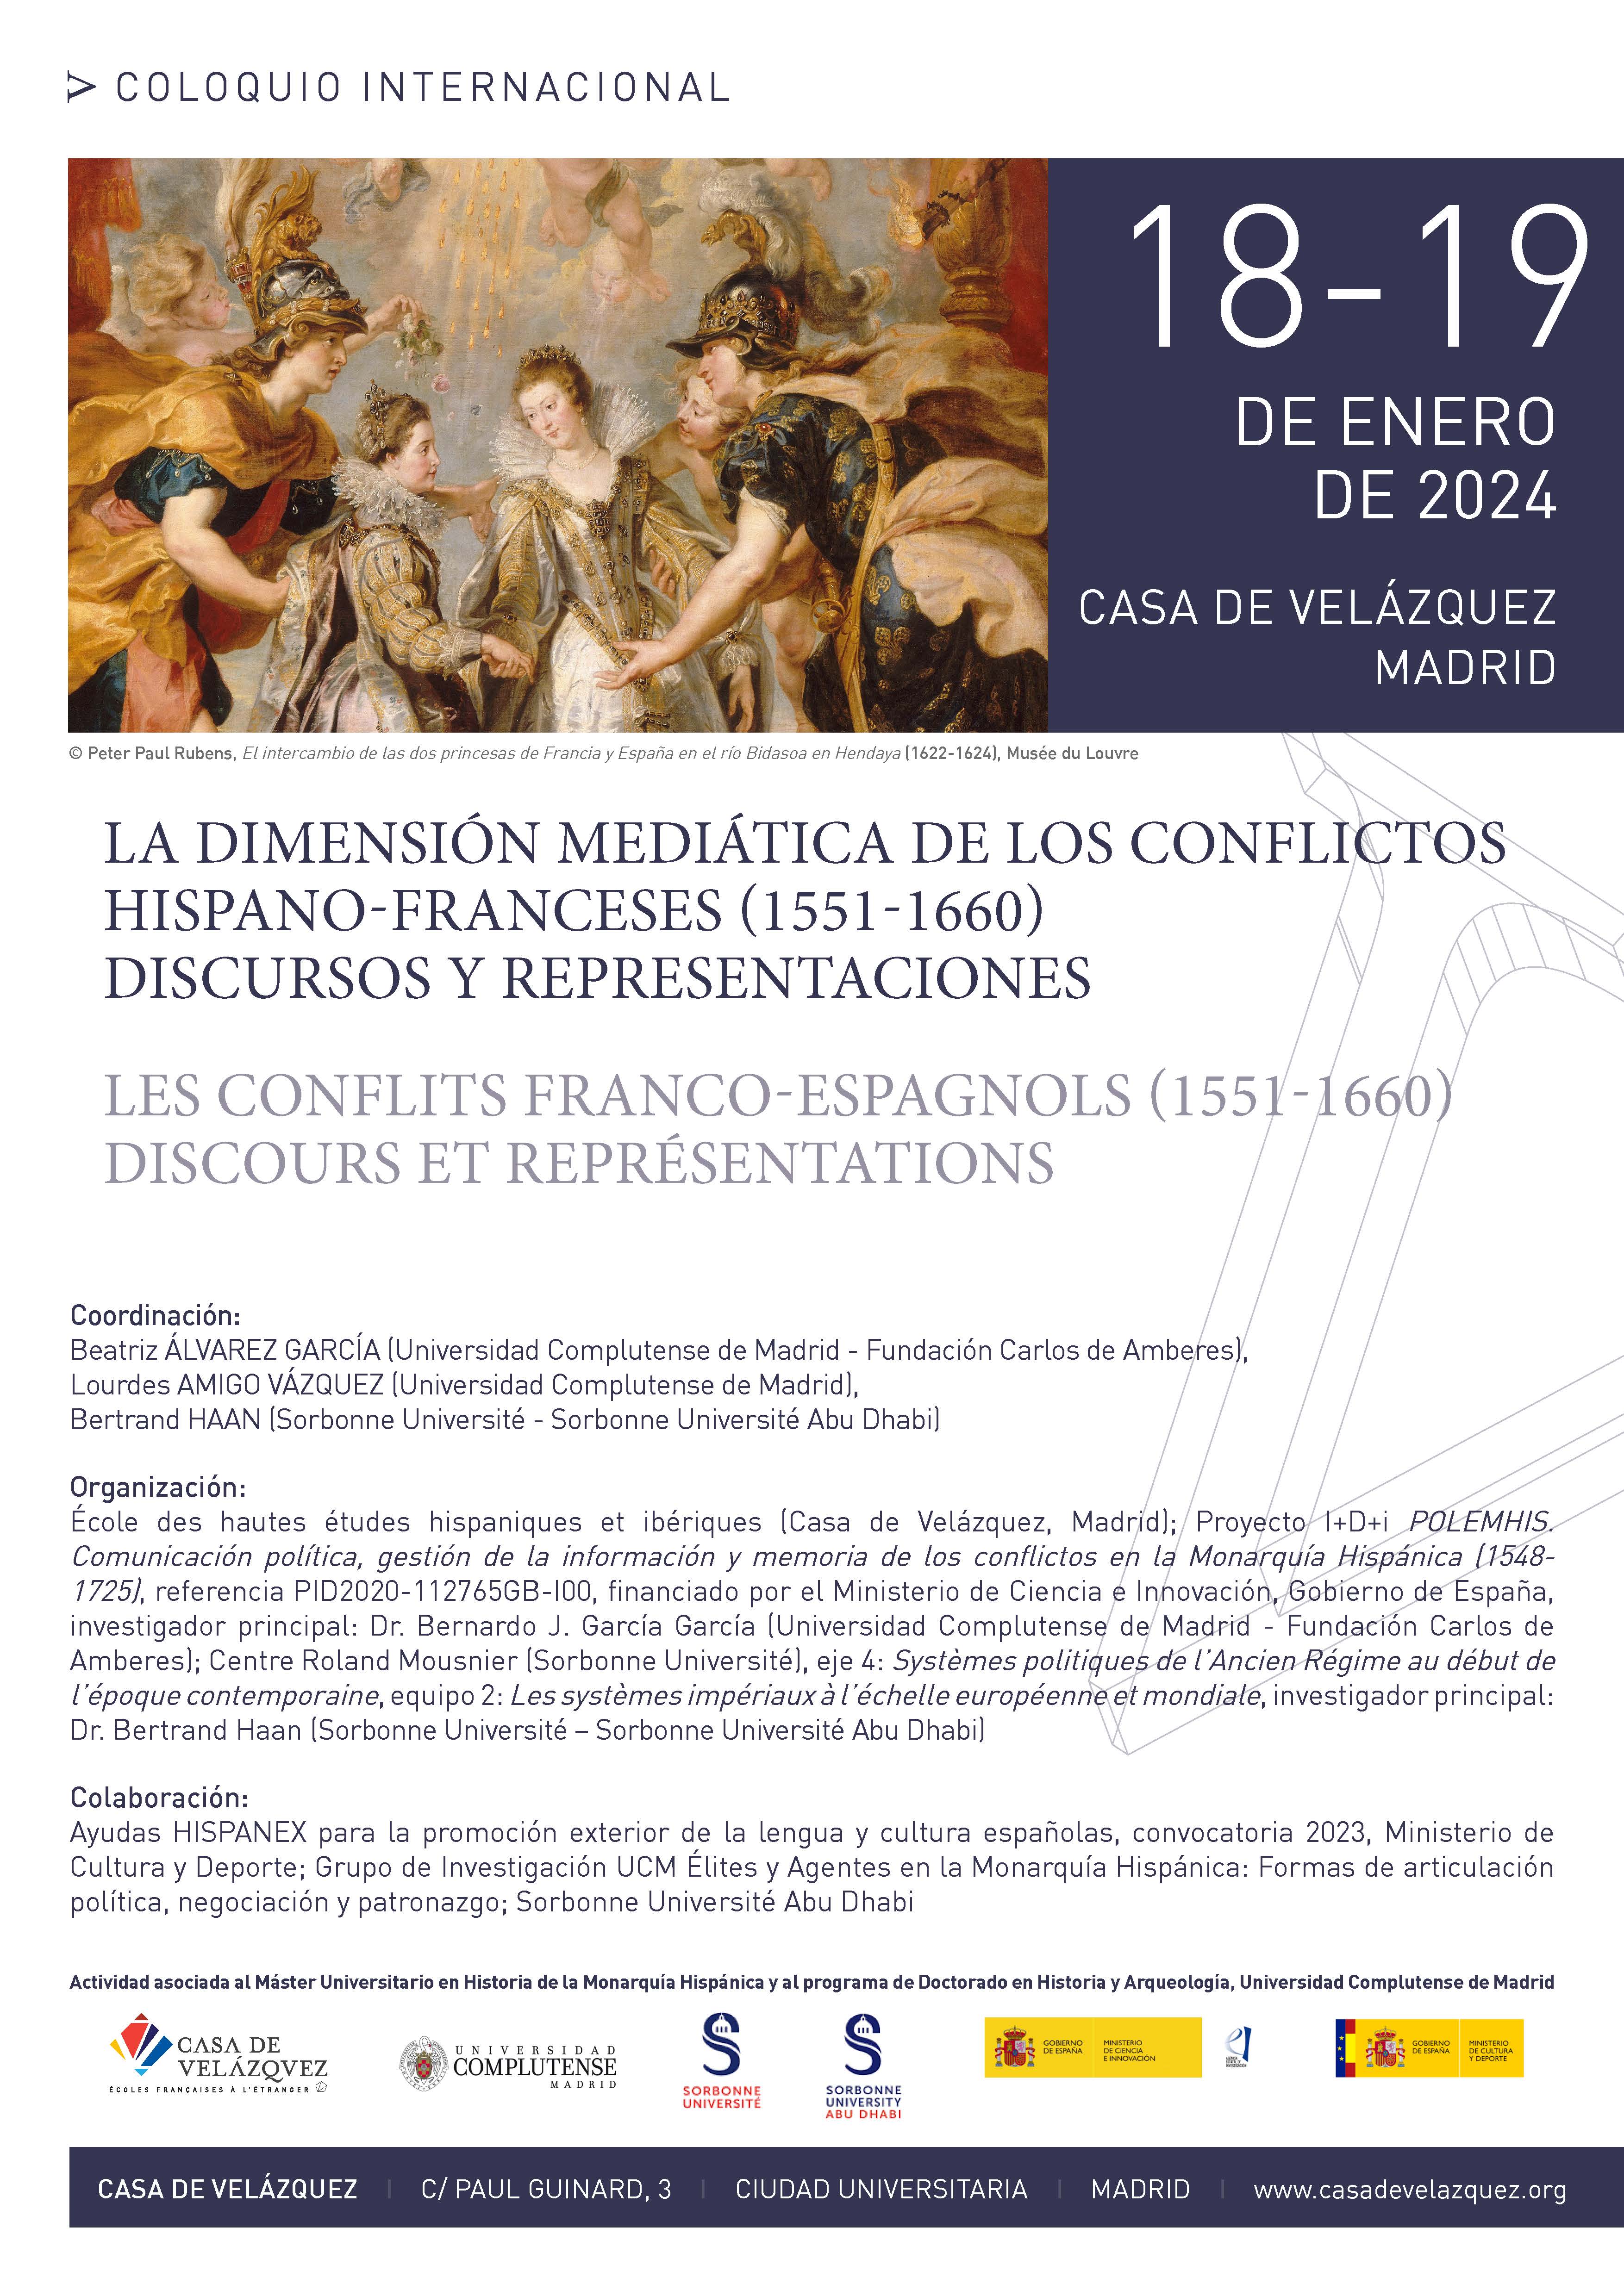 Coloquio Internacional La dimensión mediática de los conflictos hispano-franceses (1551-1660) / 18-19.01.2024